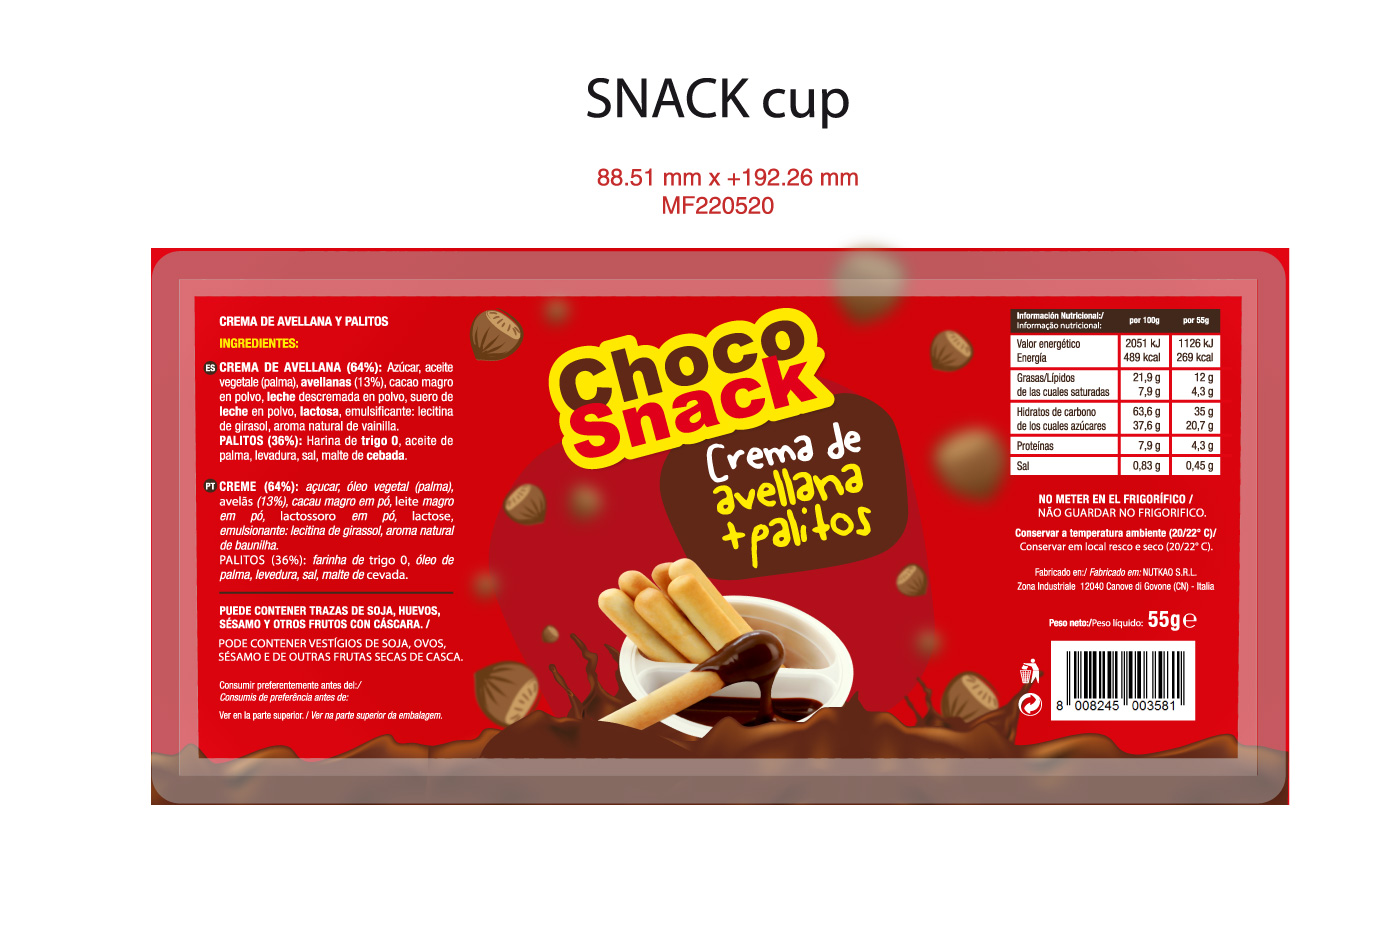 Choco snak avellana packaging etiqueta dobleessa